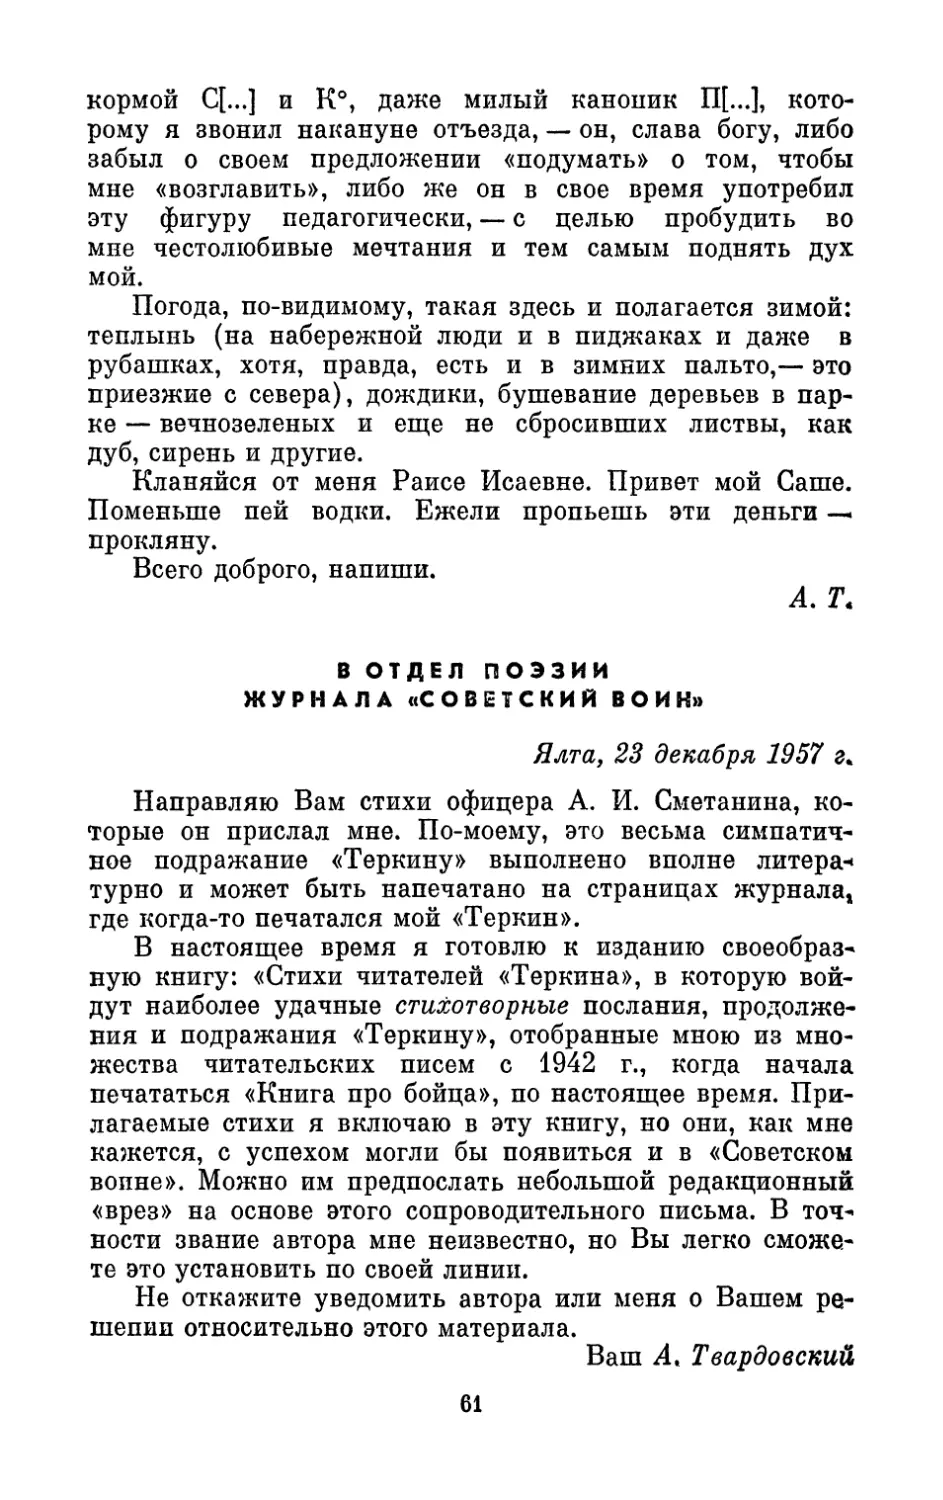 В отдел поэзии журнала «Советский воин», 23 декабря 1957 г.